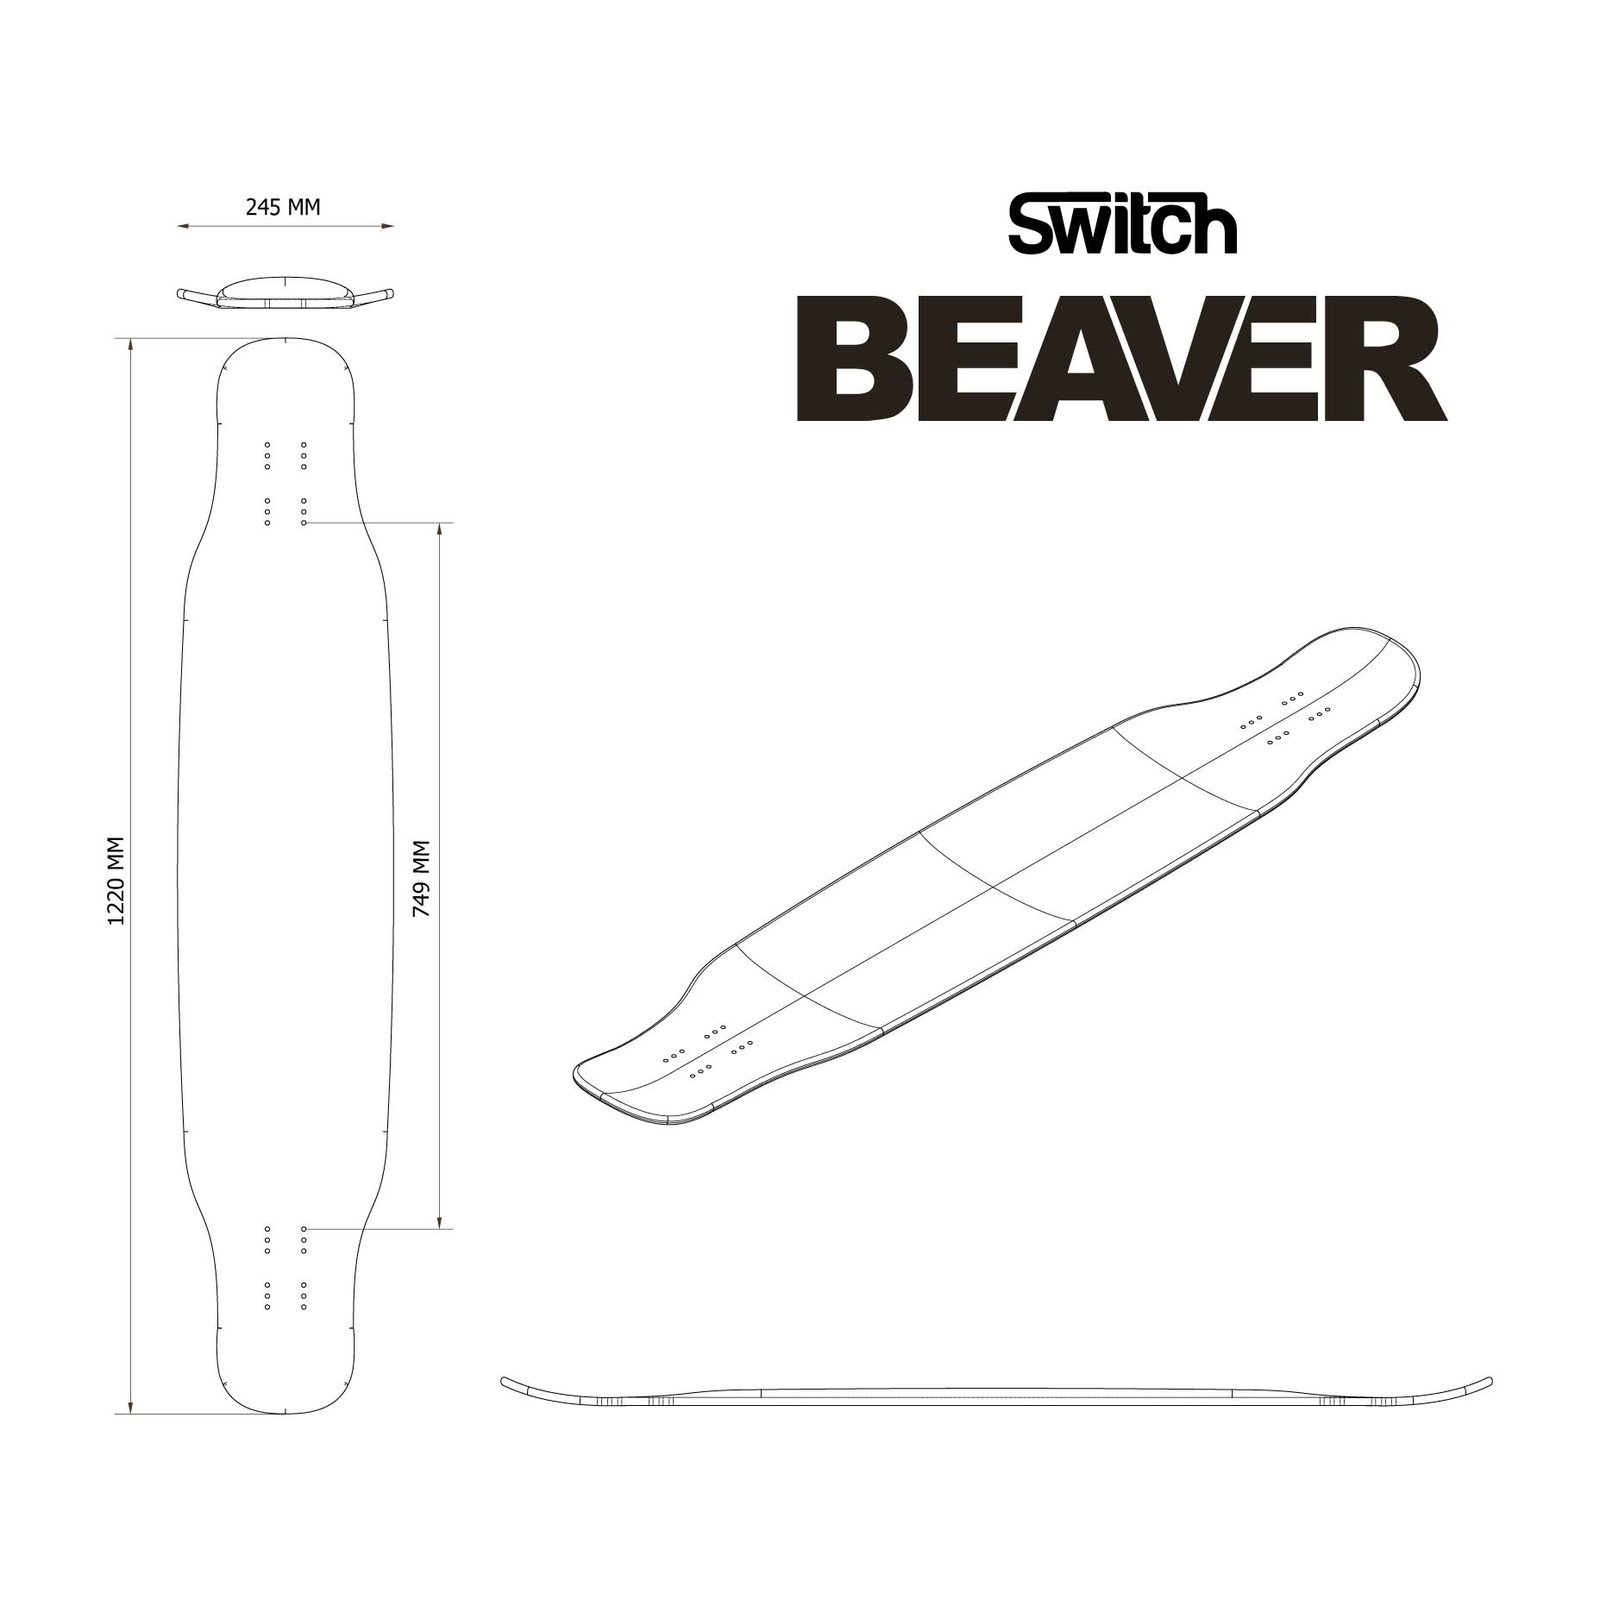 Beaver 48" Dancing Longboard Flex | Switch - Equipment, Longboards, Skateboards